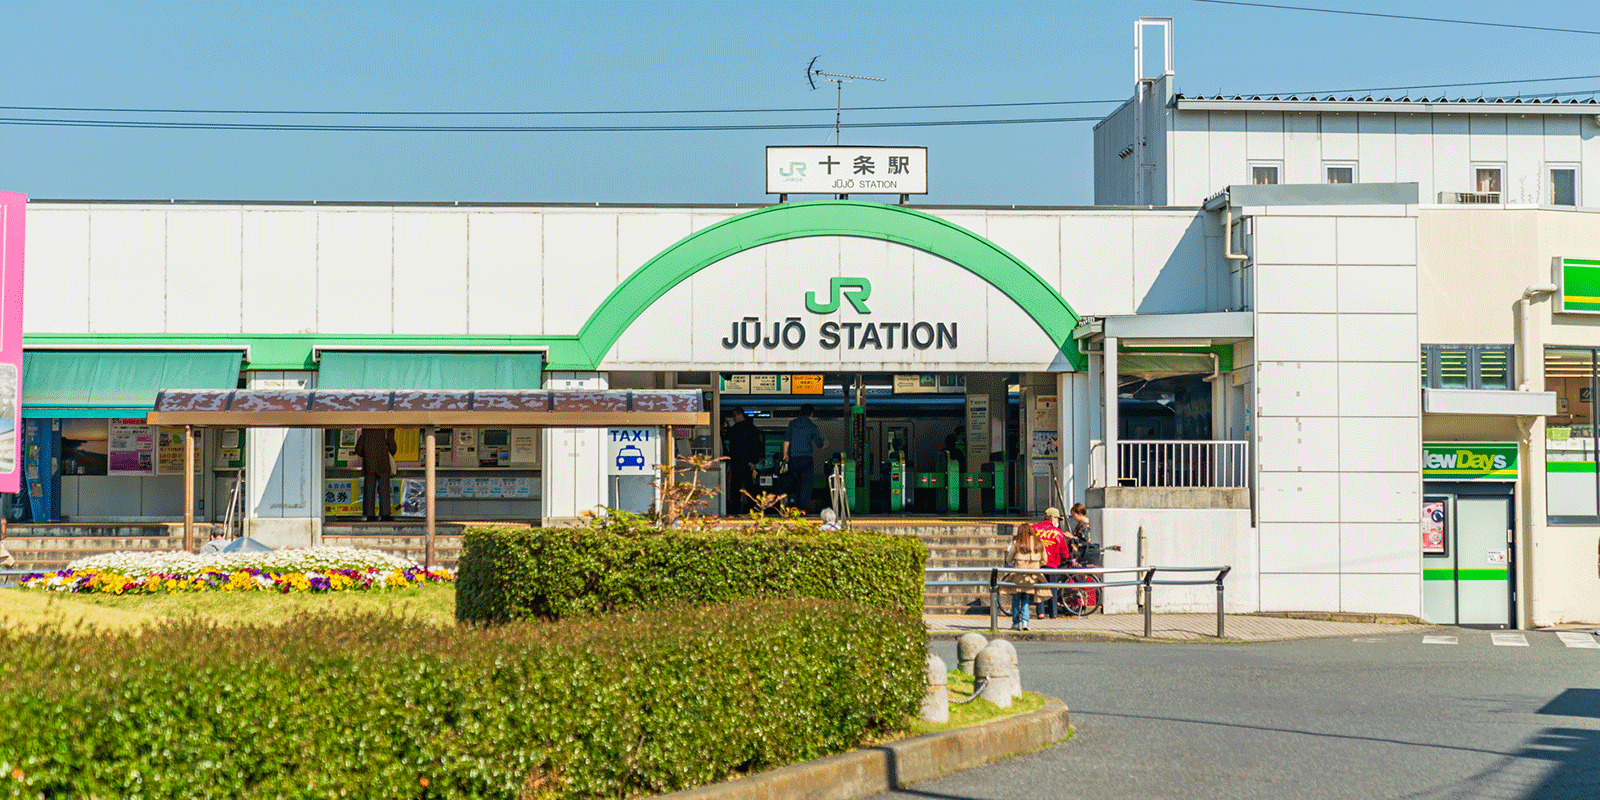 十条駅